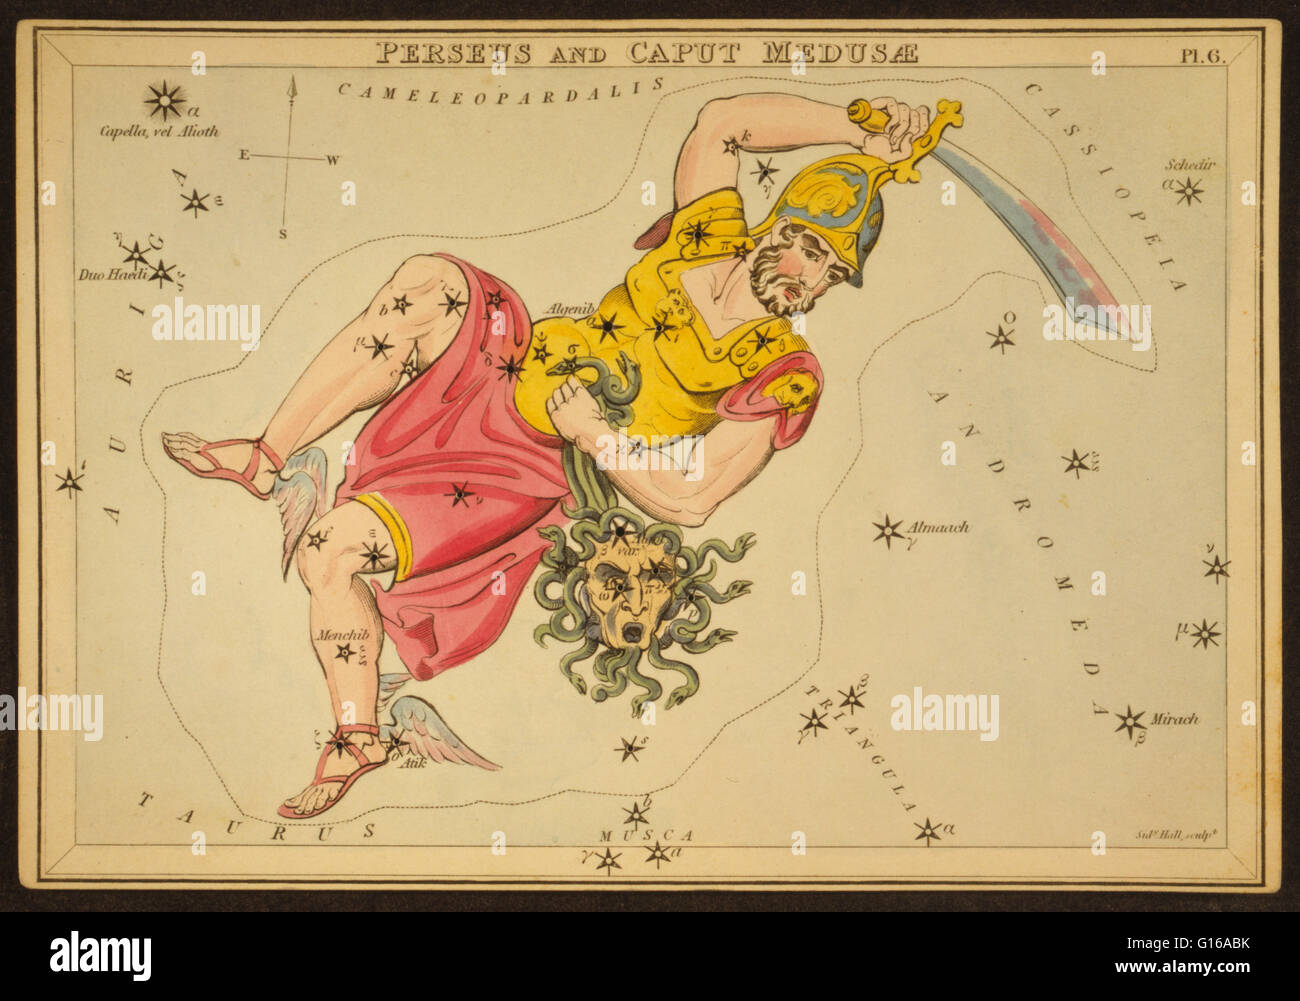 Astronomische Diagramm mit blutigen Schwert und den abgetrennten Kopf der Medusa bilden das Sternbild Perseus. Perseus mit dem Haupt der Medusa Gorgon. Perseus ist ein Sternbild am nördlichen Himmel, benannt nach dem griechischen Helden Perseus. Es war am Stockfoto